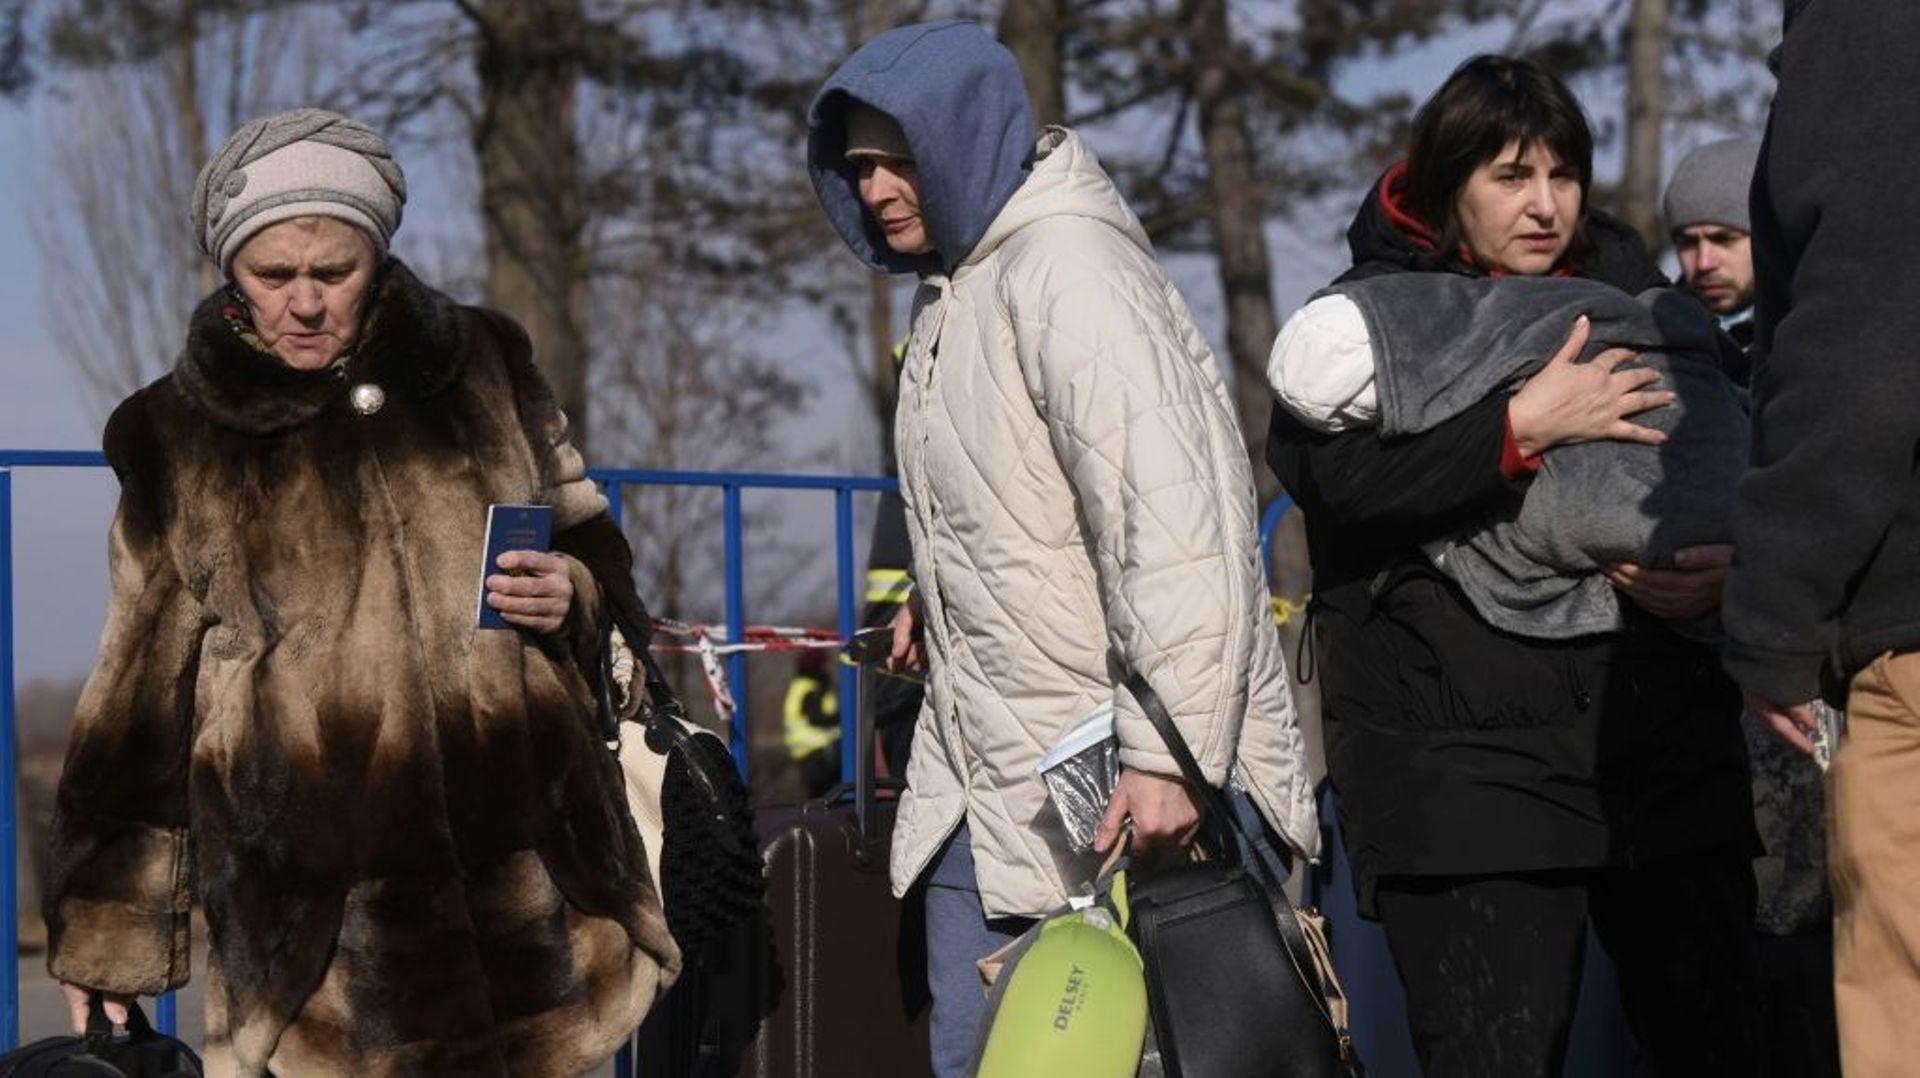 Des réfugiés ukrainiens traversent la frontière ukraino-roumaine à Siret, dans le nord de la Roumanie, le 20 mars 2022

